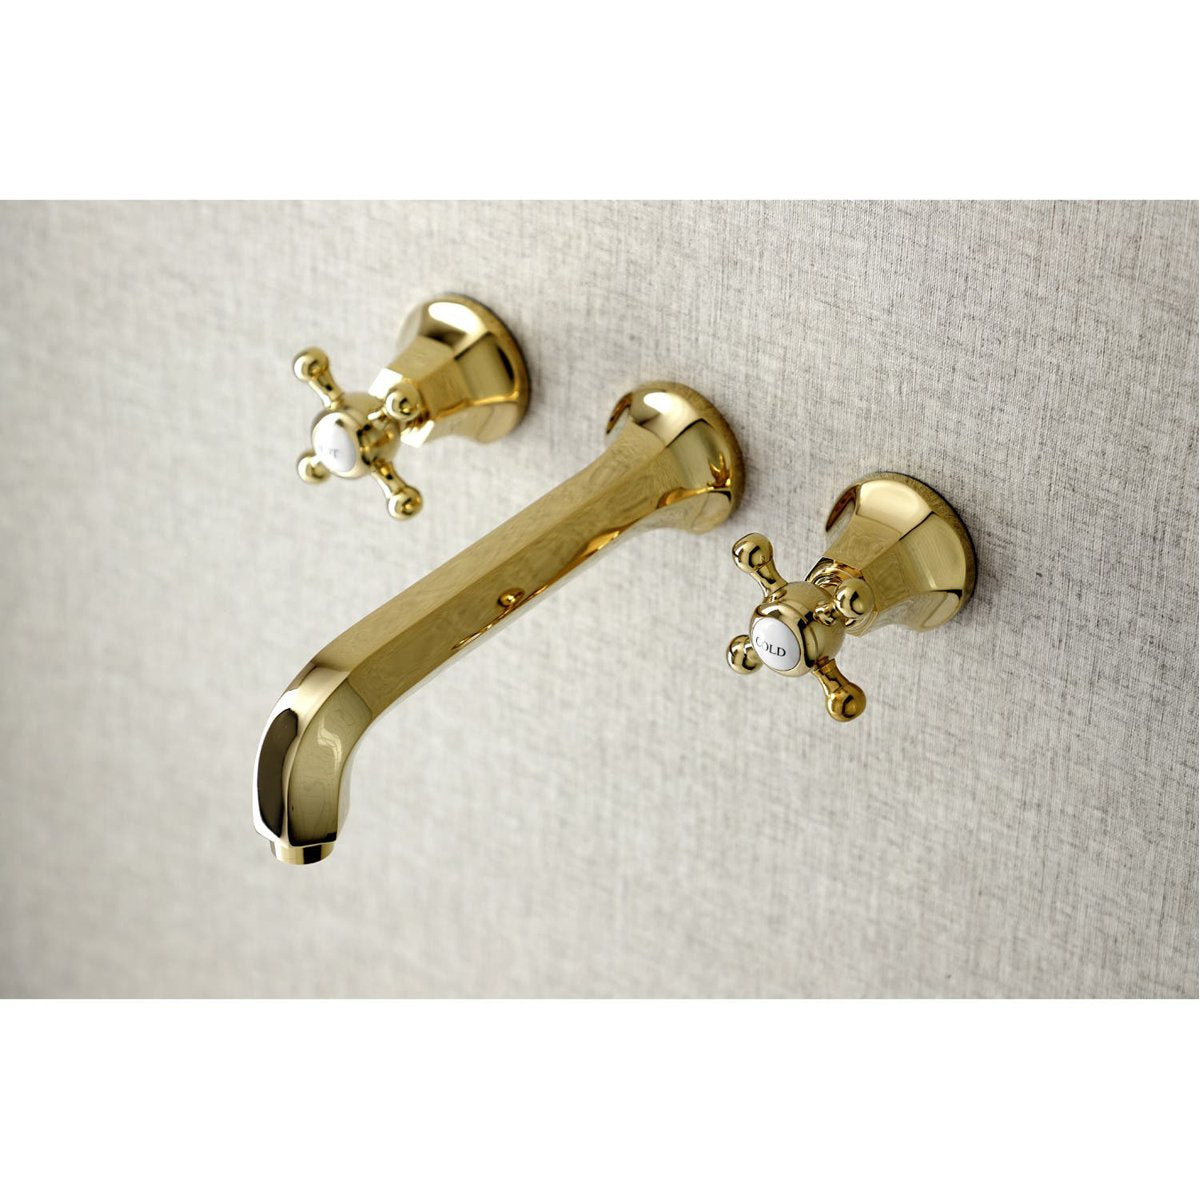 Kingston Brass Metropolitan Two Handles Wall Mount Tub Faucet